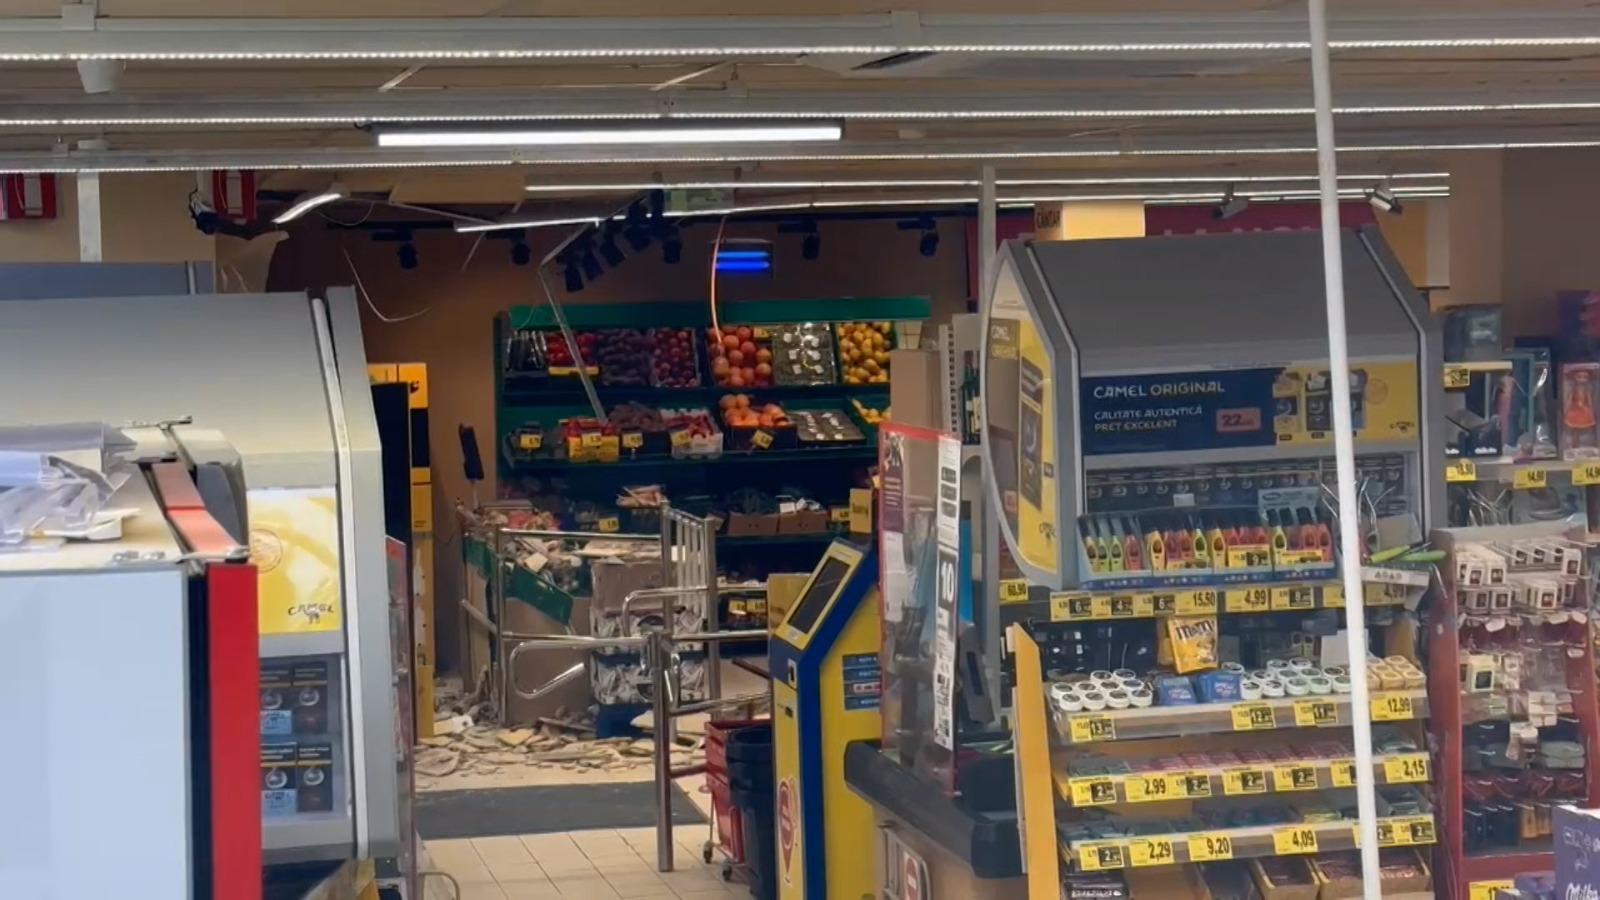 Tavanul supermarketului Supeco, prăbuşit peste o clientă. Martor: "Cred că d'aia a şi căzut"